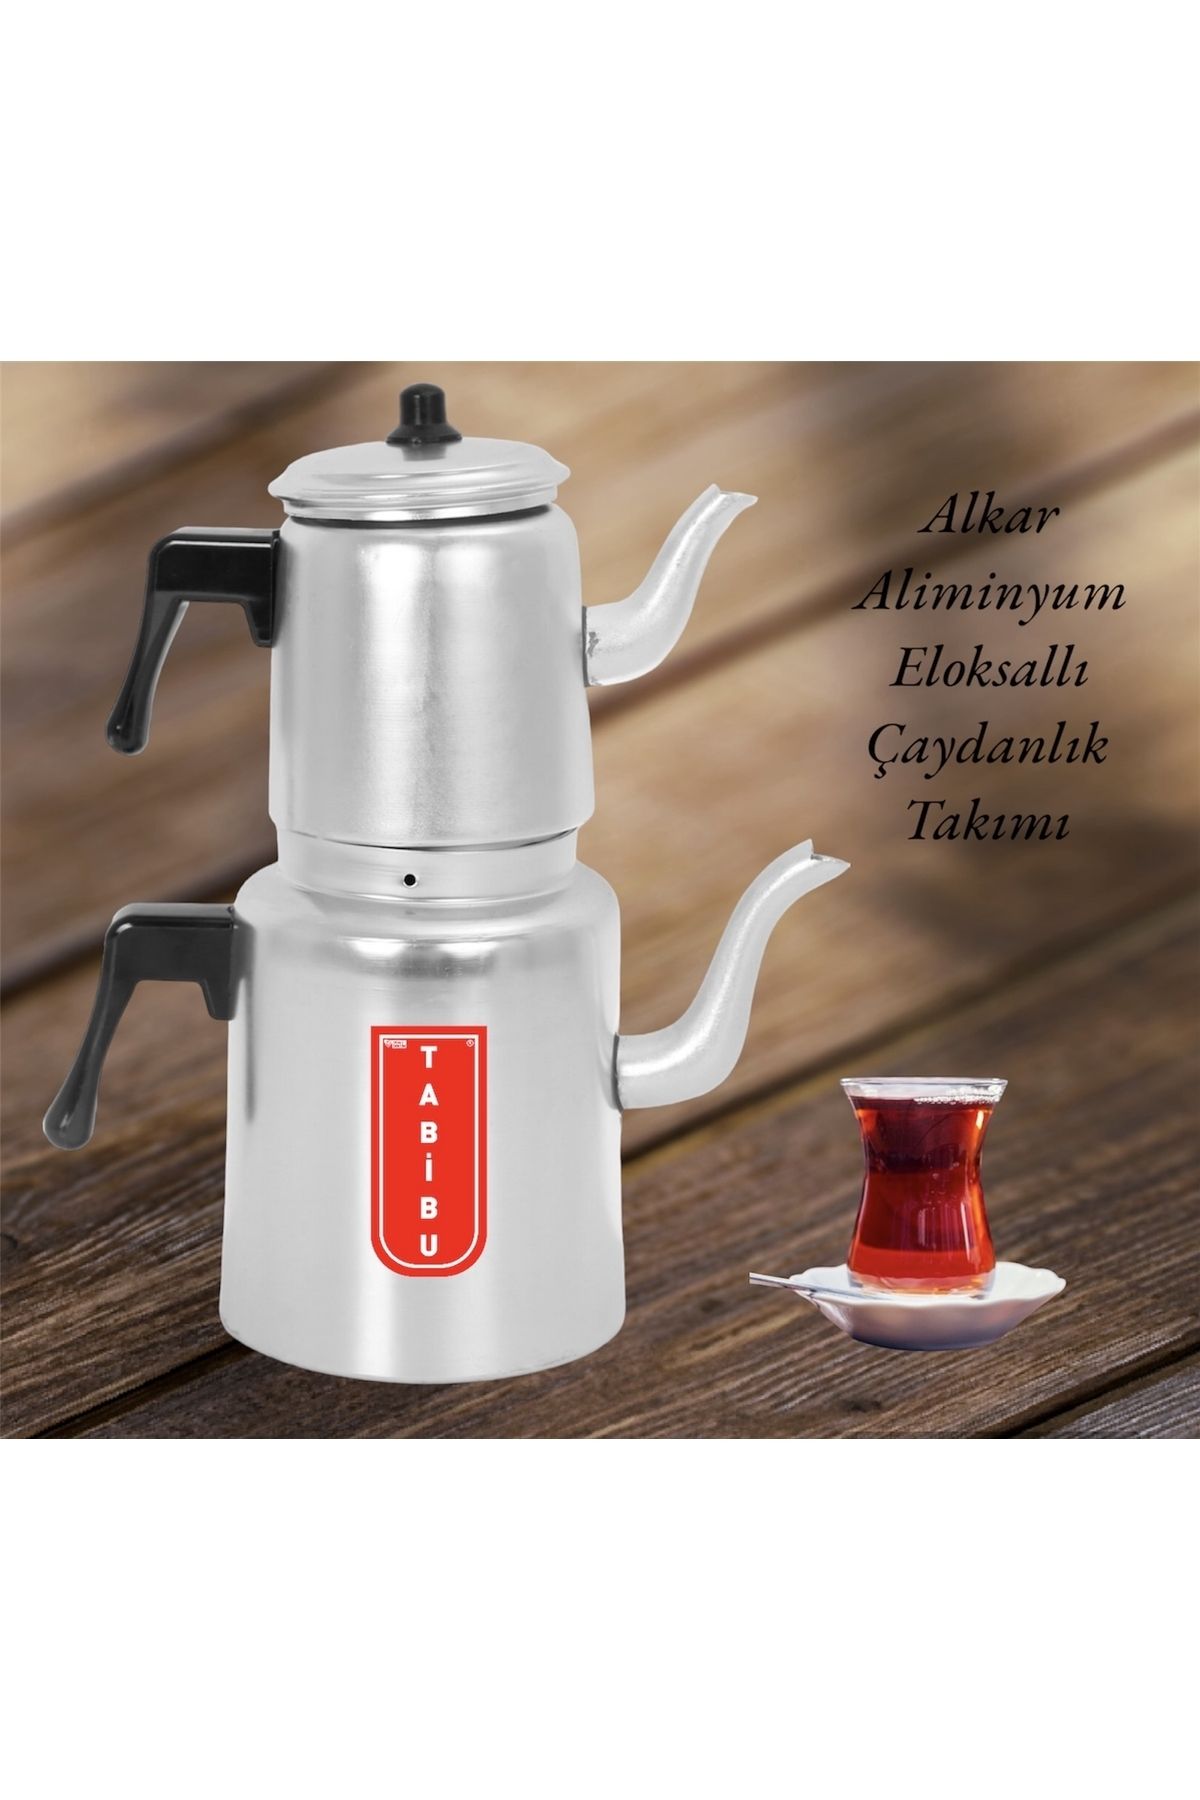 Tabibu Aliminyum Çaydanlık Takımı Alkar Eloksallı 3no 4-6kişilikdir